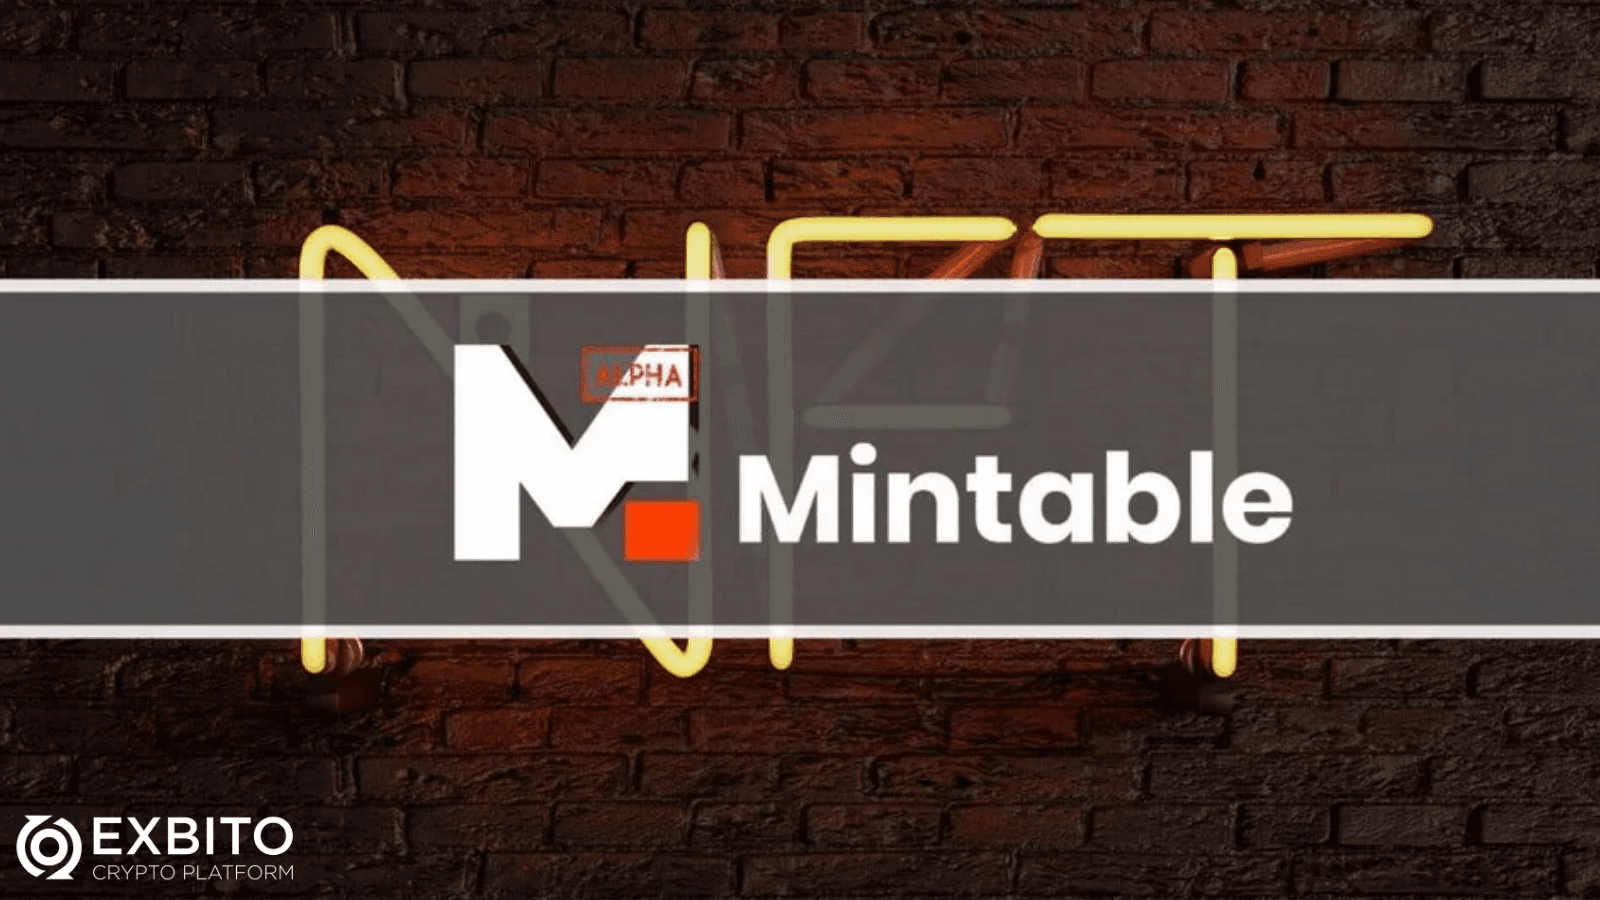 مینتبل (Mintable) چیست؟.png